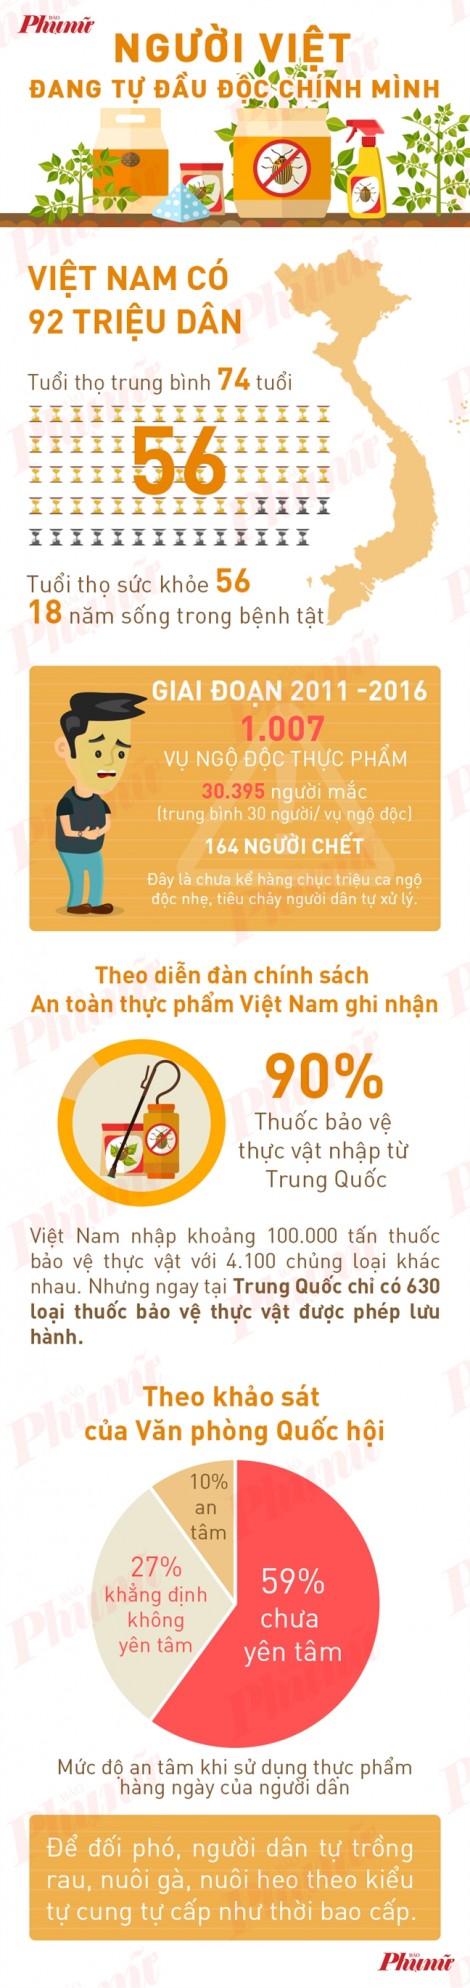 Tuổi thọ trung bình 74 nhưng người Việt sống cùng bệnh tật hết... 18 năm